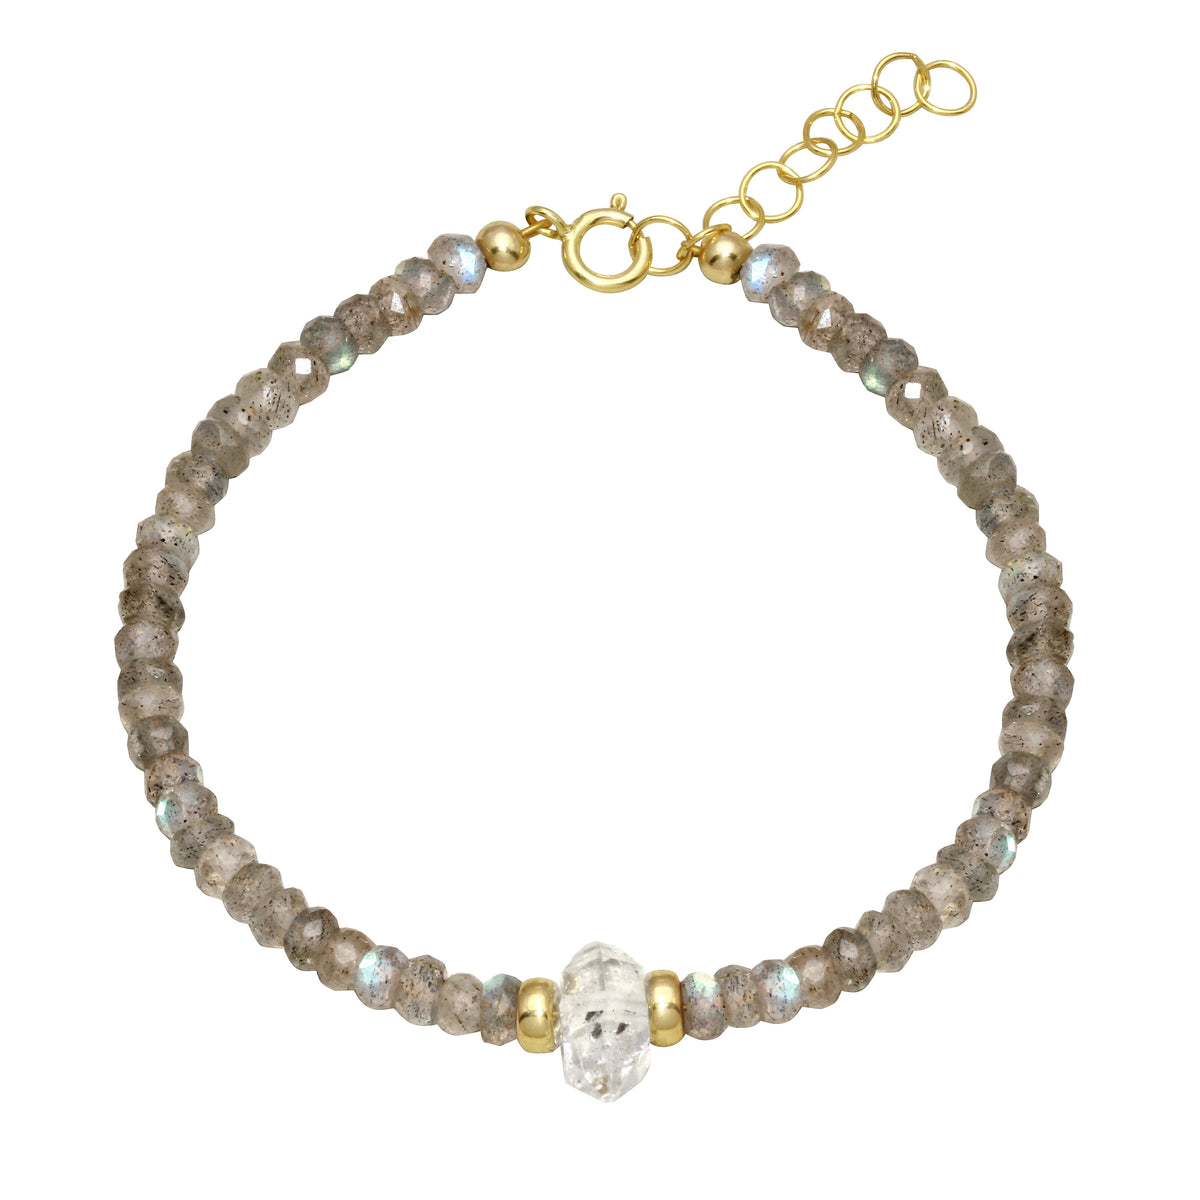 Strung Together Herkimer Diamond Beaded Bracelet - 14k gold filled | Little Rock Collection bracelet Amanda K Lockrow